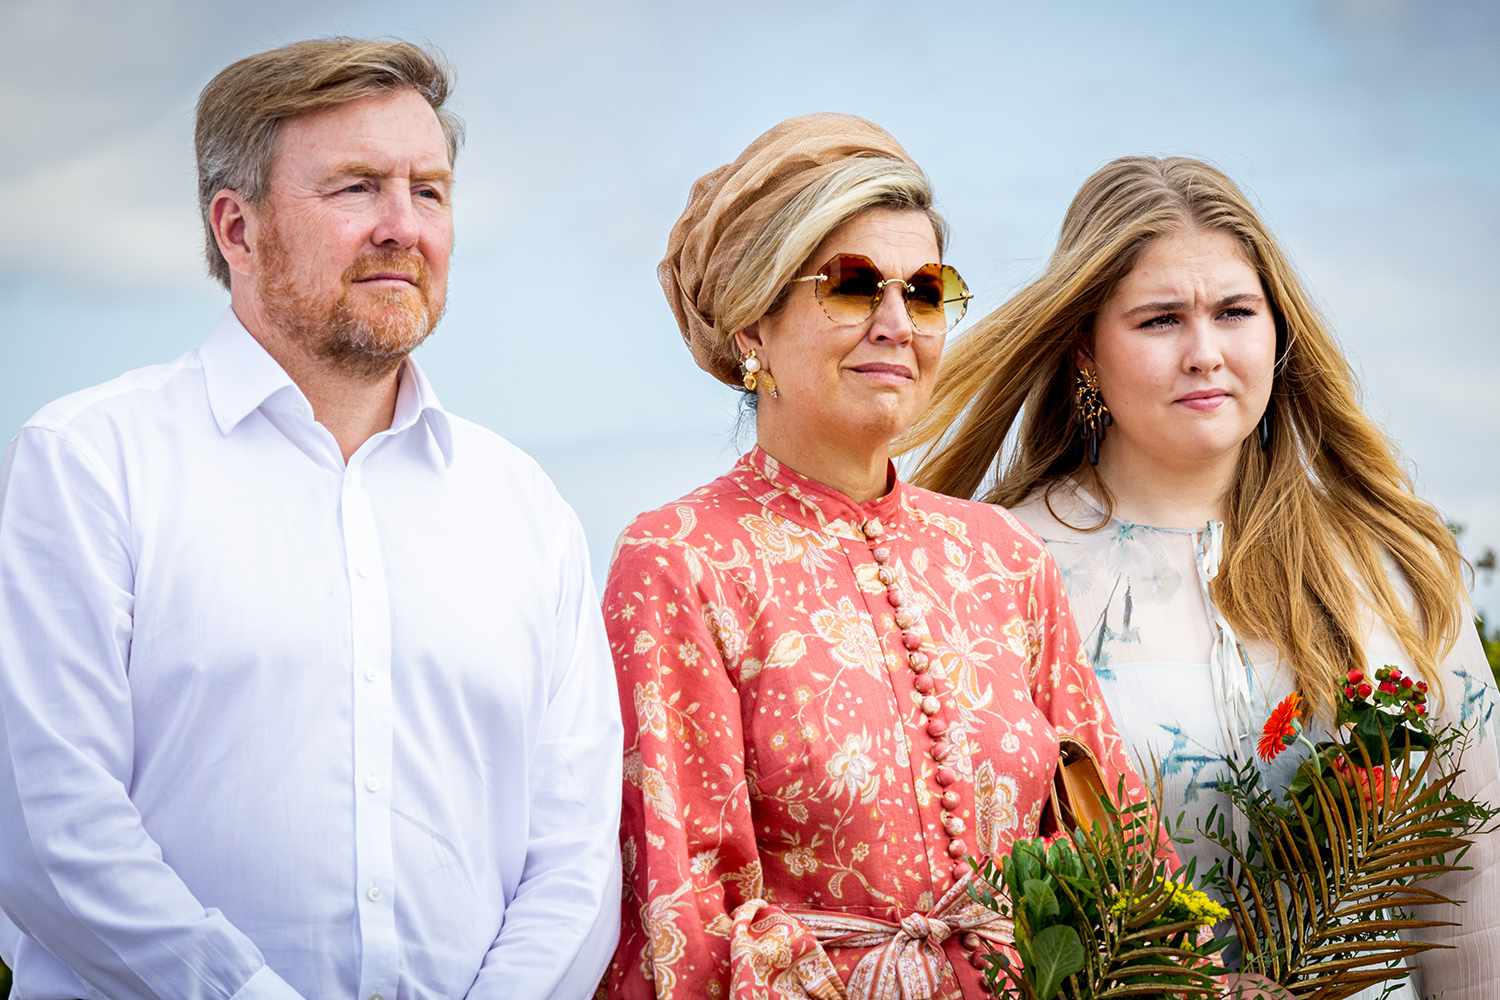 Holenderska rodzina królewska stoi w obliczu protestów podczas trasy po Karaibach — jak Kate Middleton i książę William